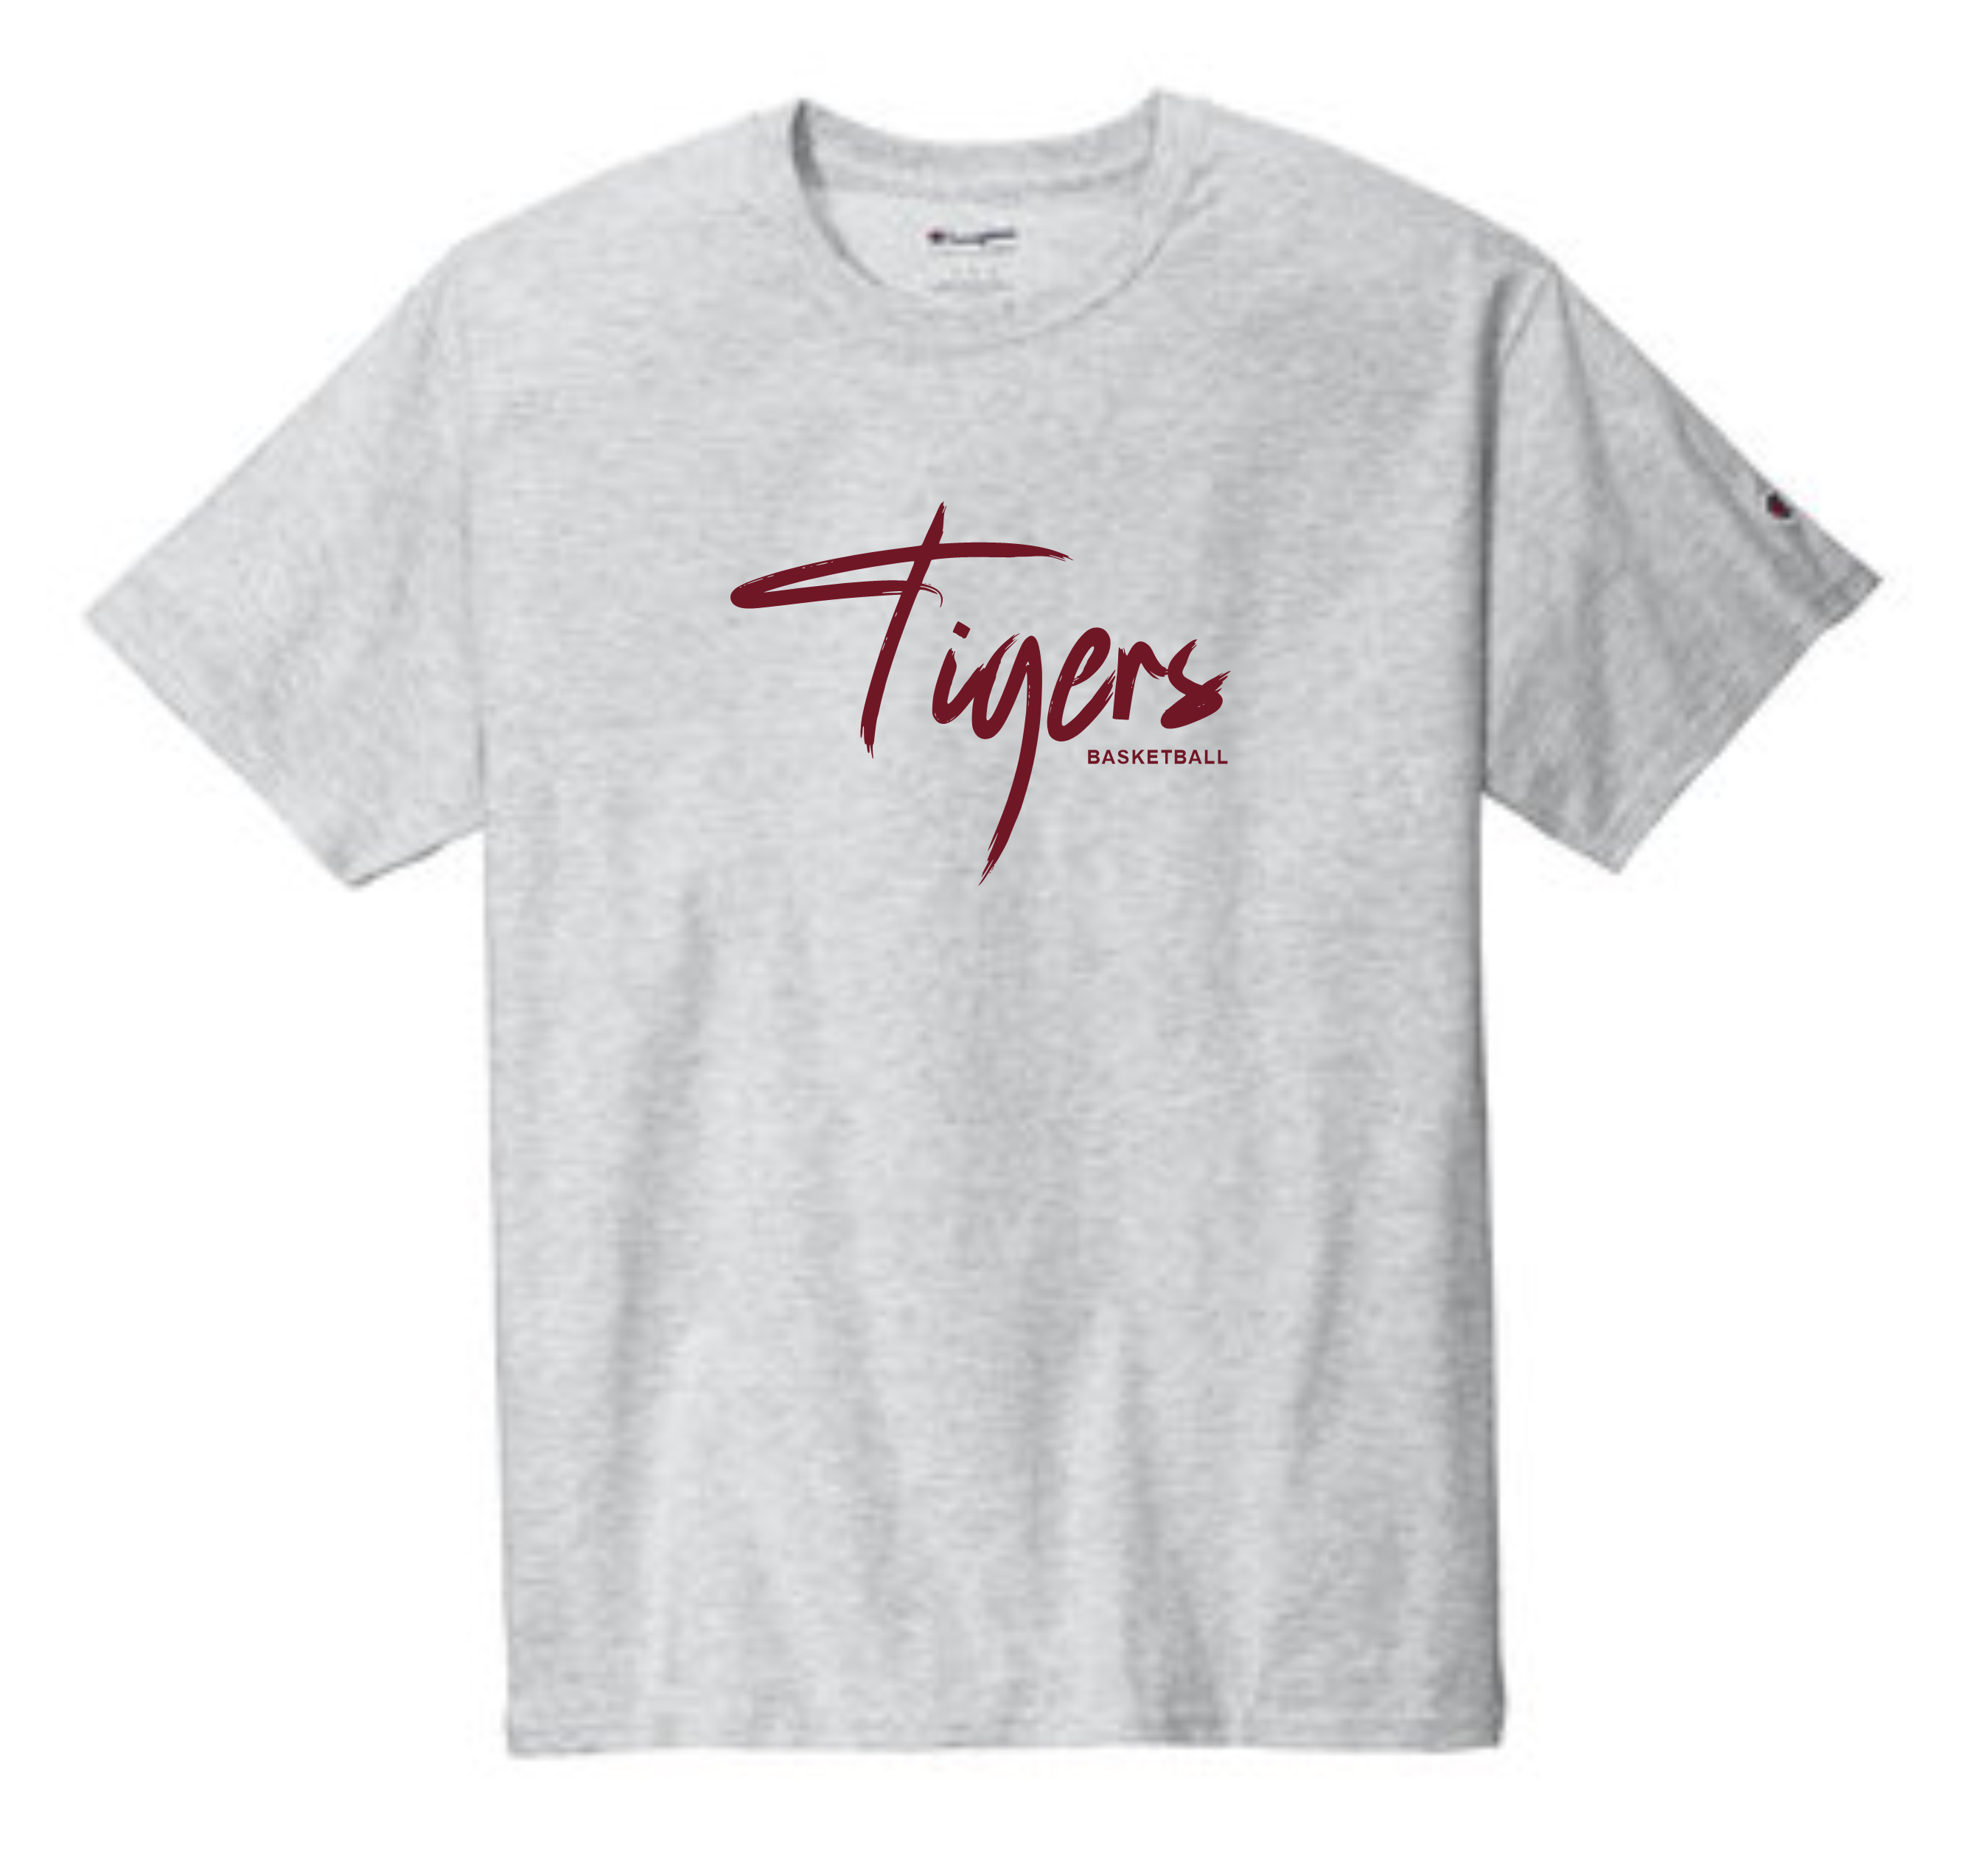 Tigers Champion® T-Shirt